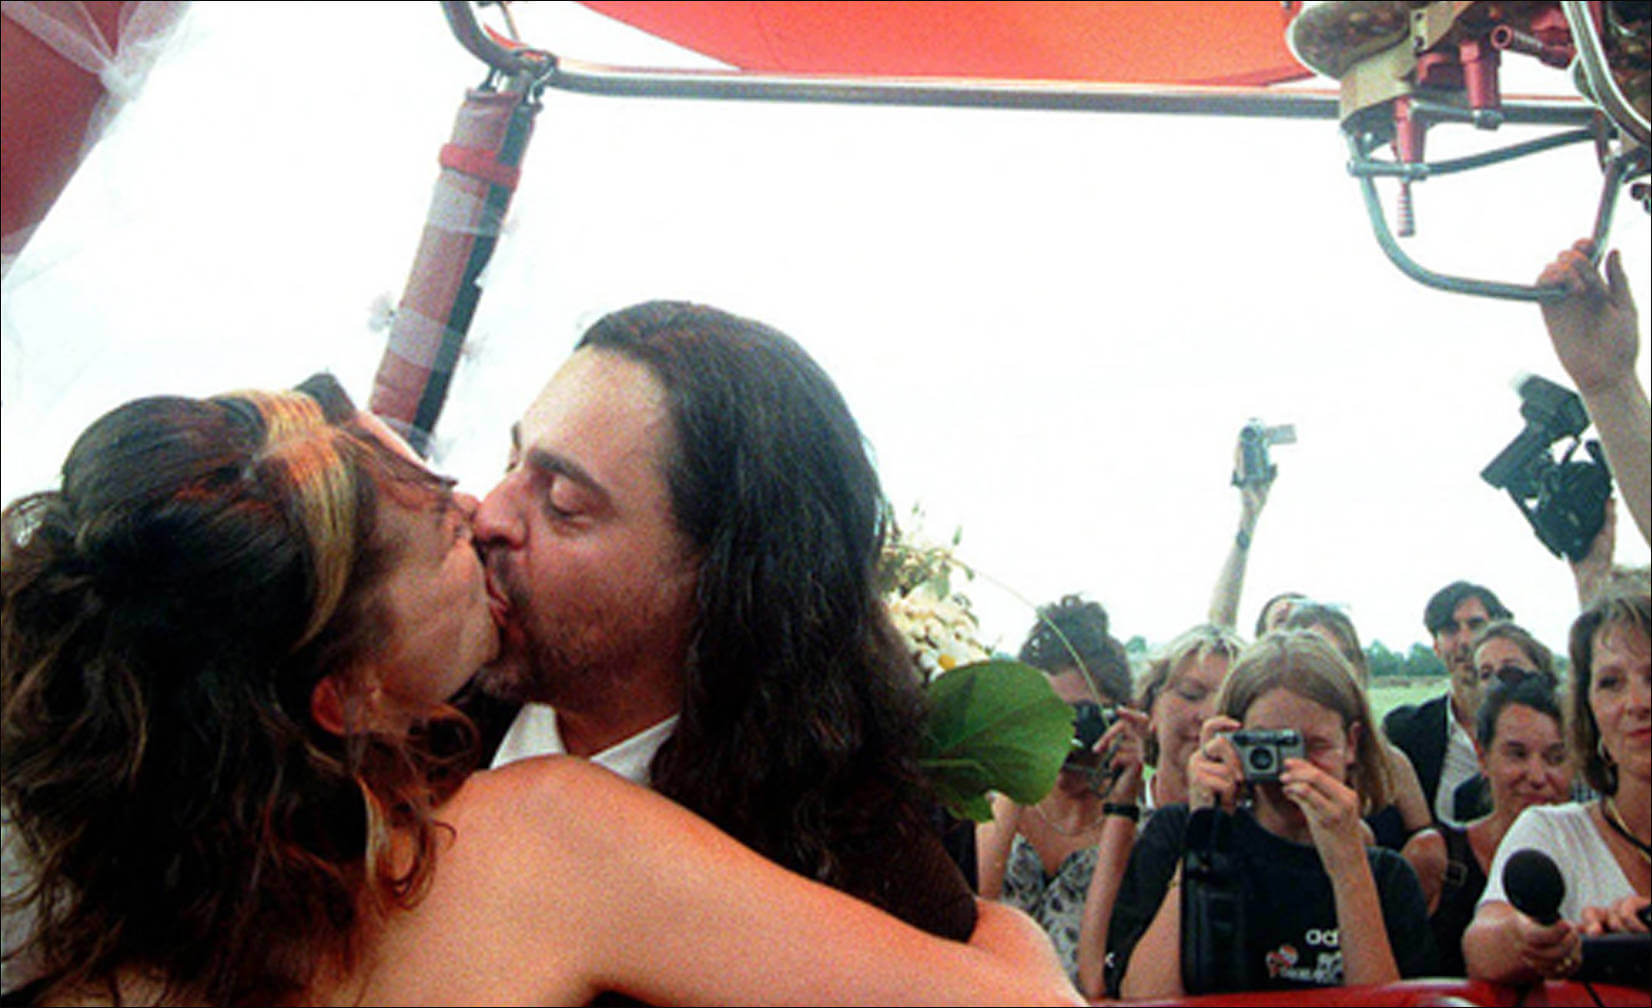  kiss in a hot-air balloon outside Berlin